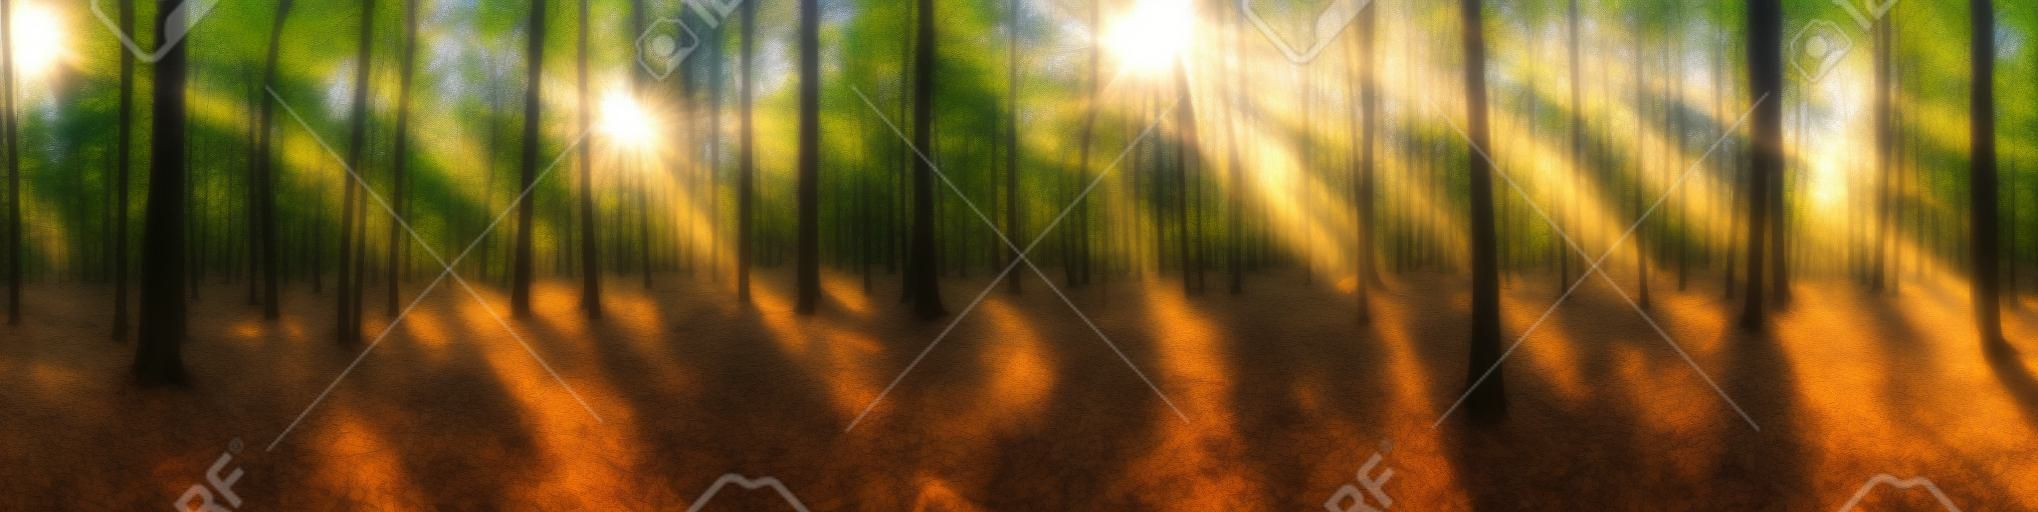 Belo panorama da floresta com sol brilhante brilhando através das árvores